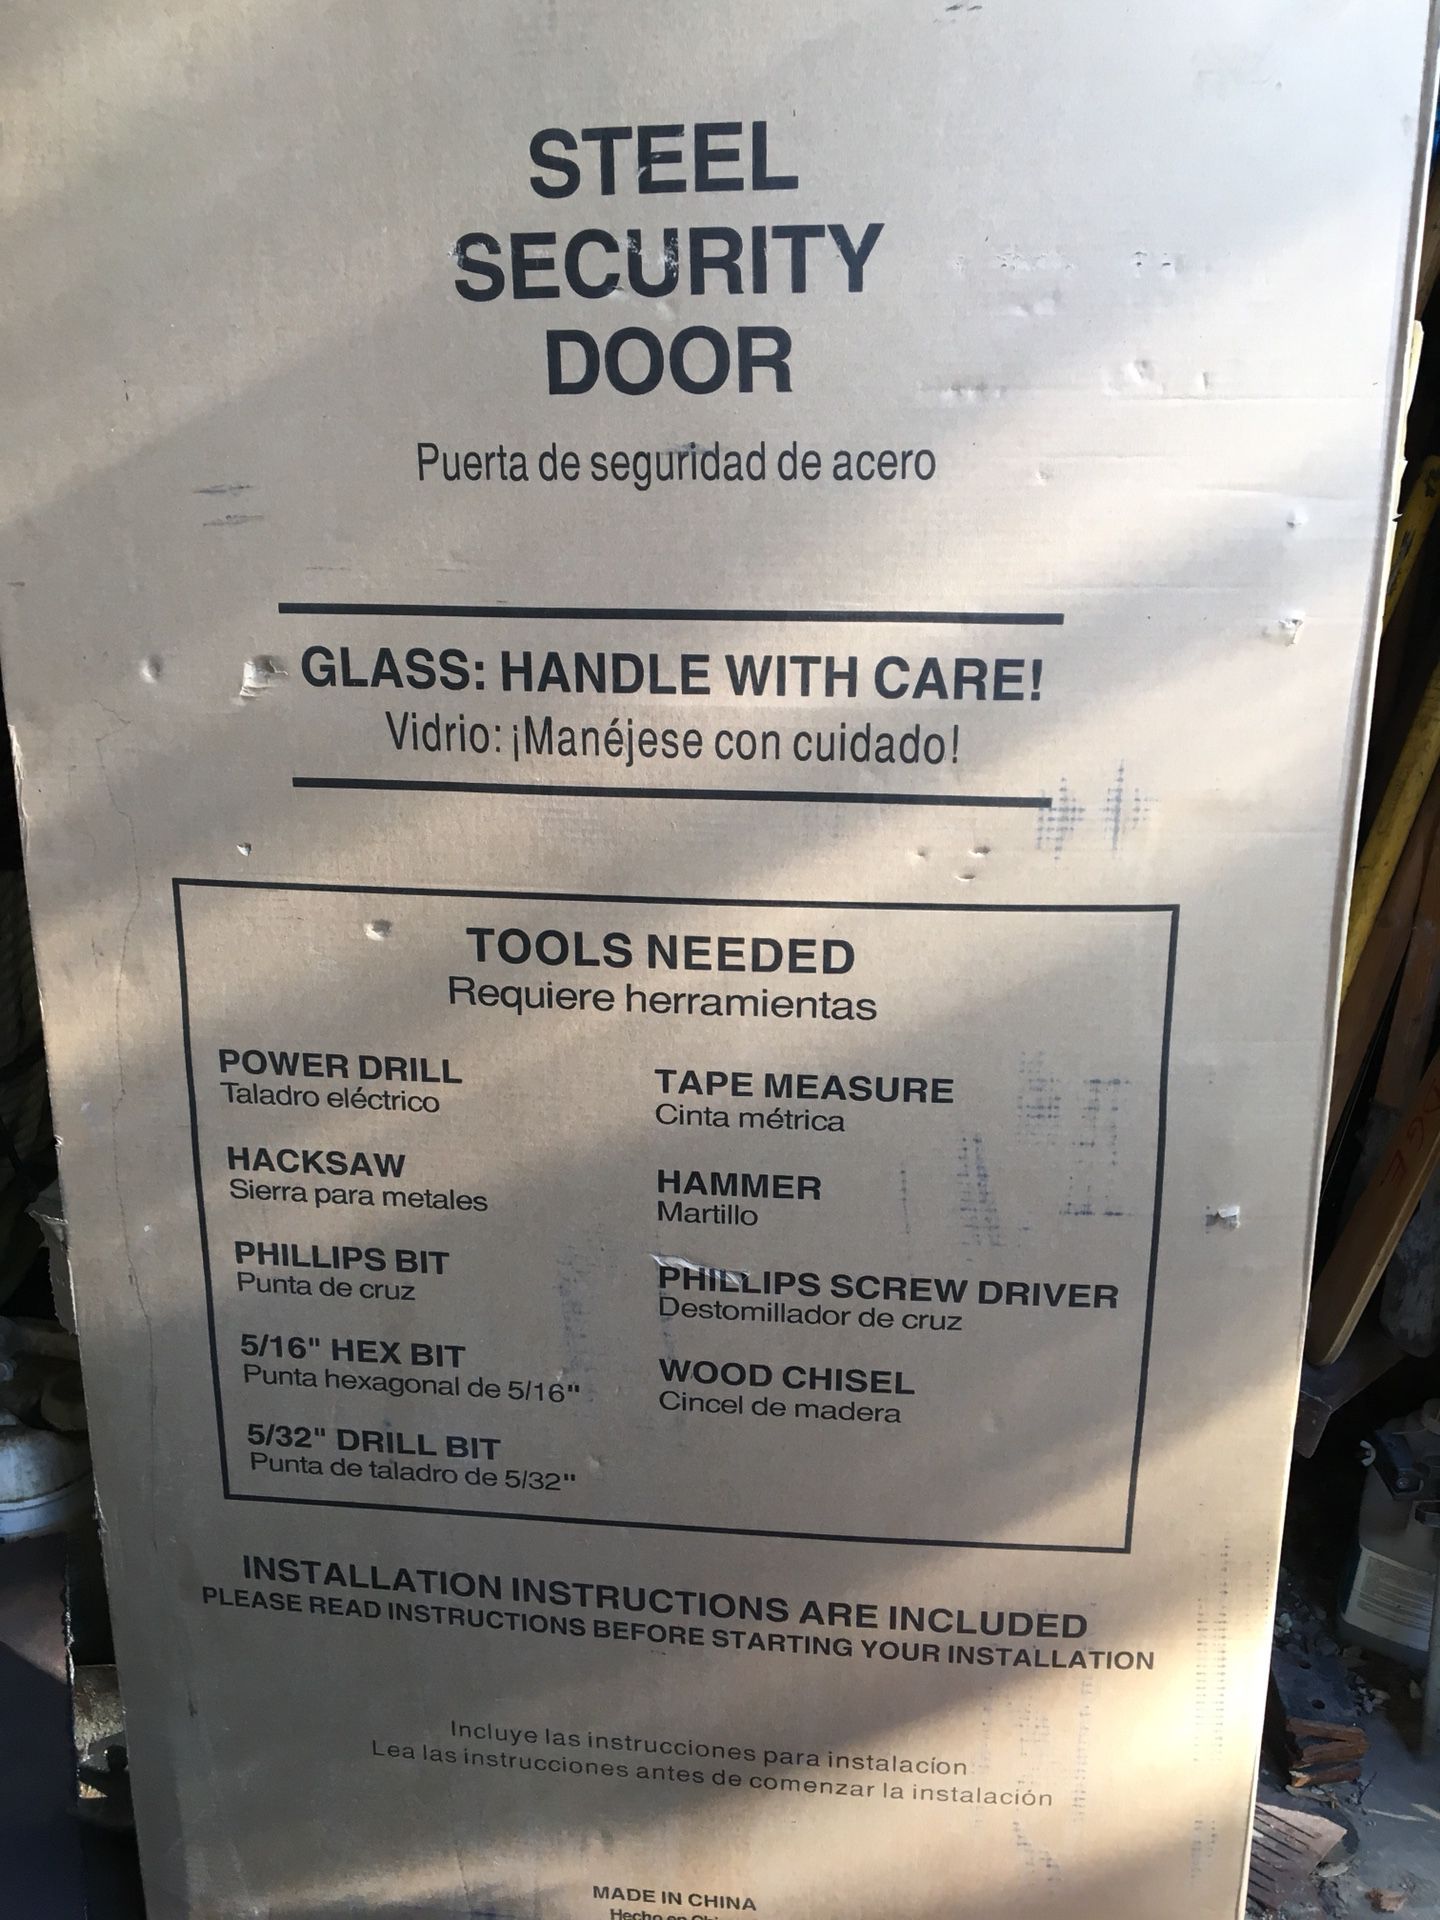 Brand new steel security door